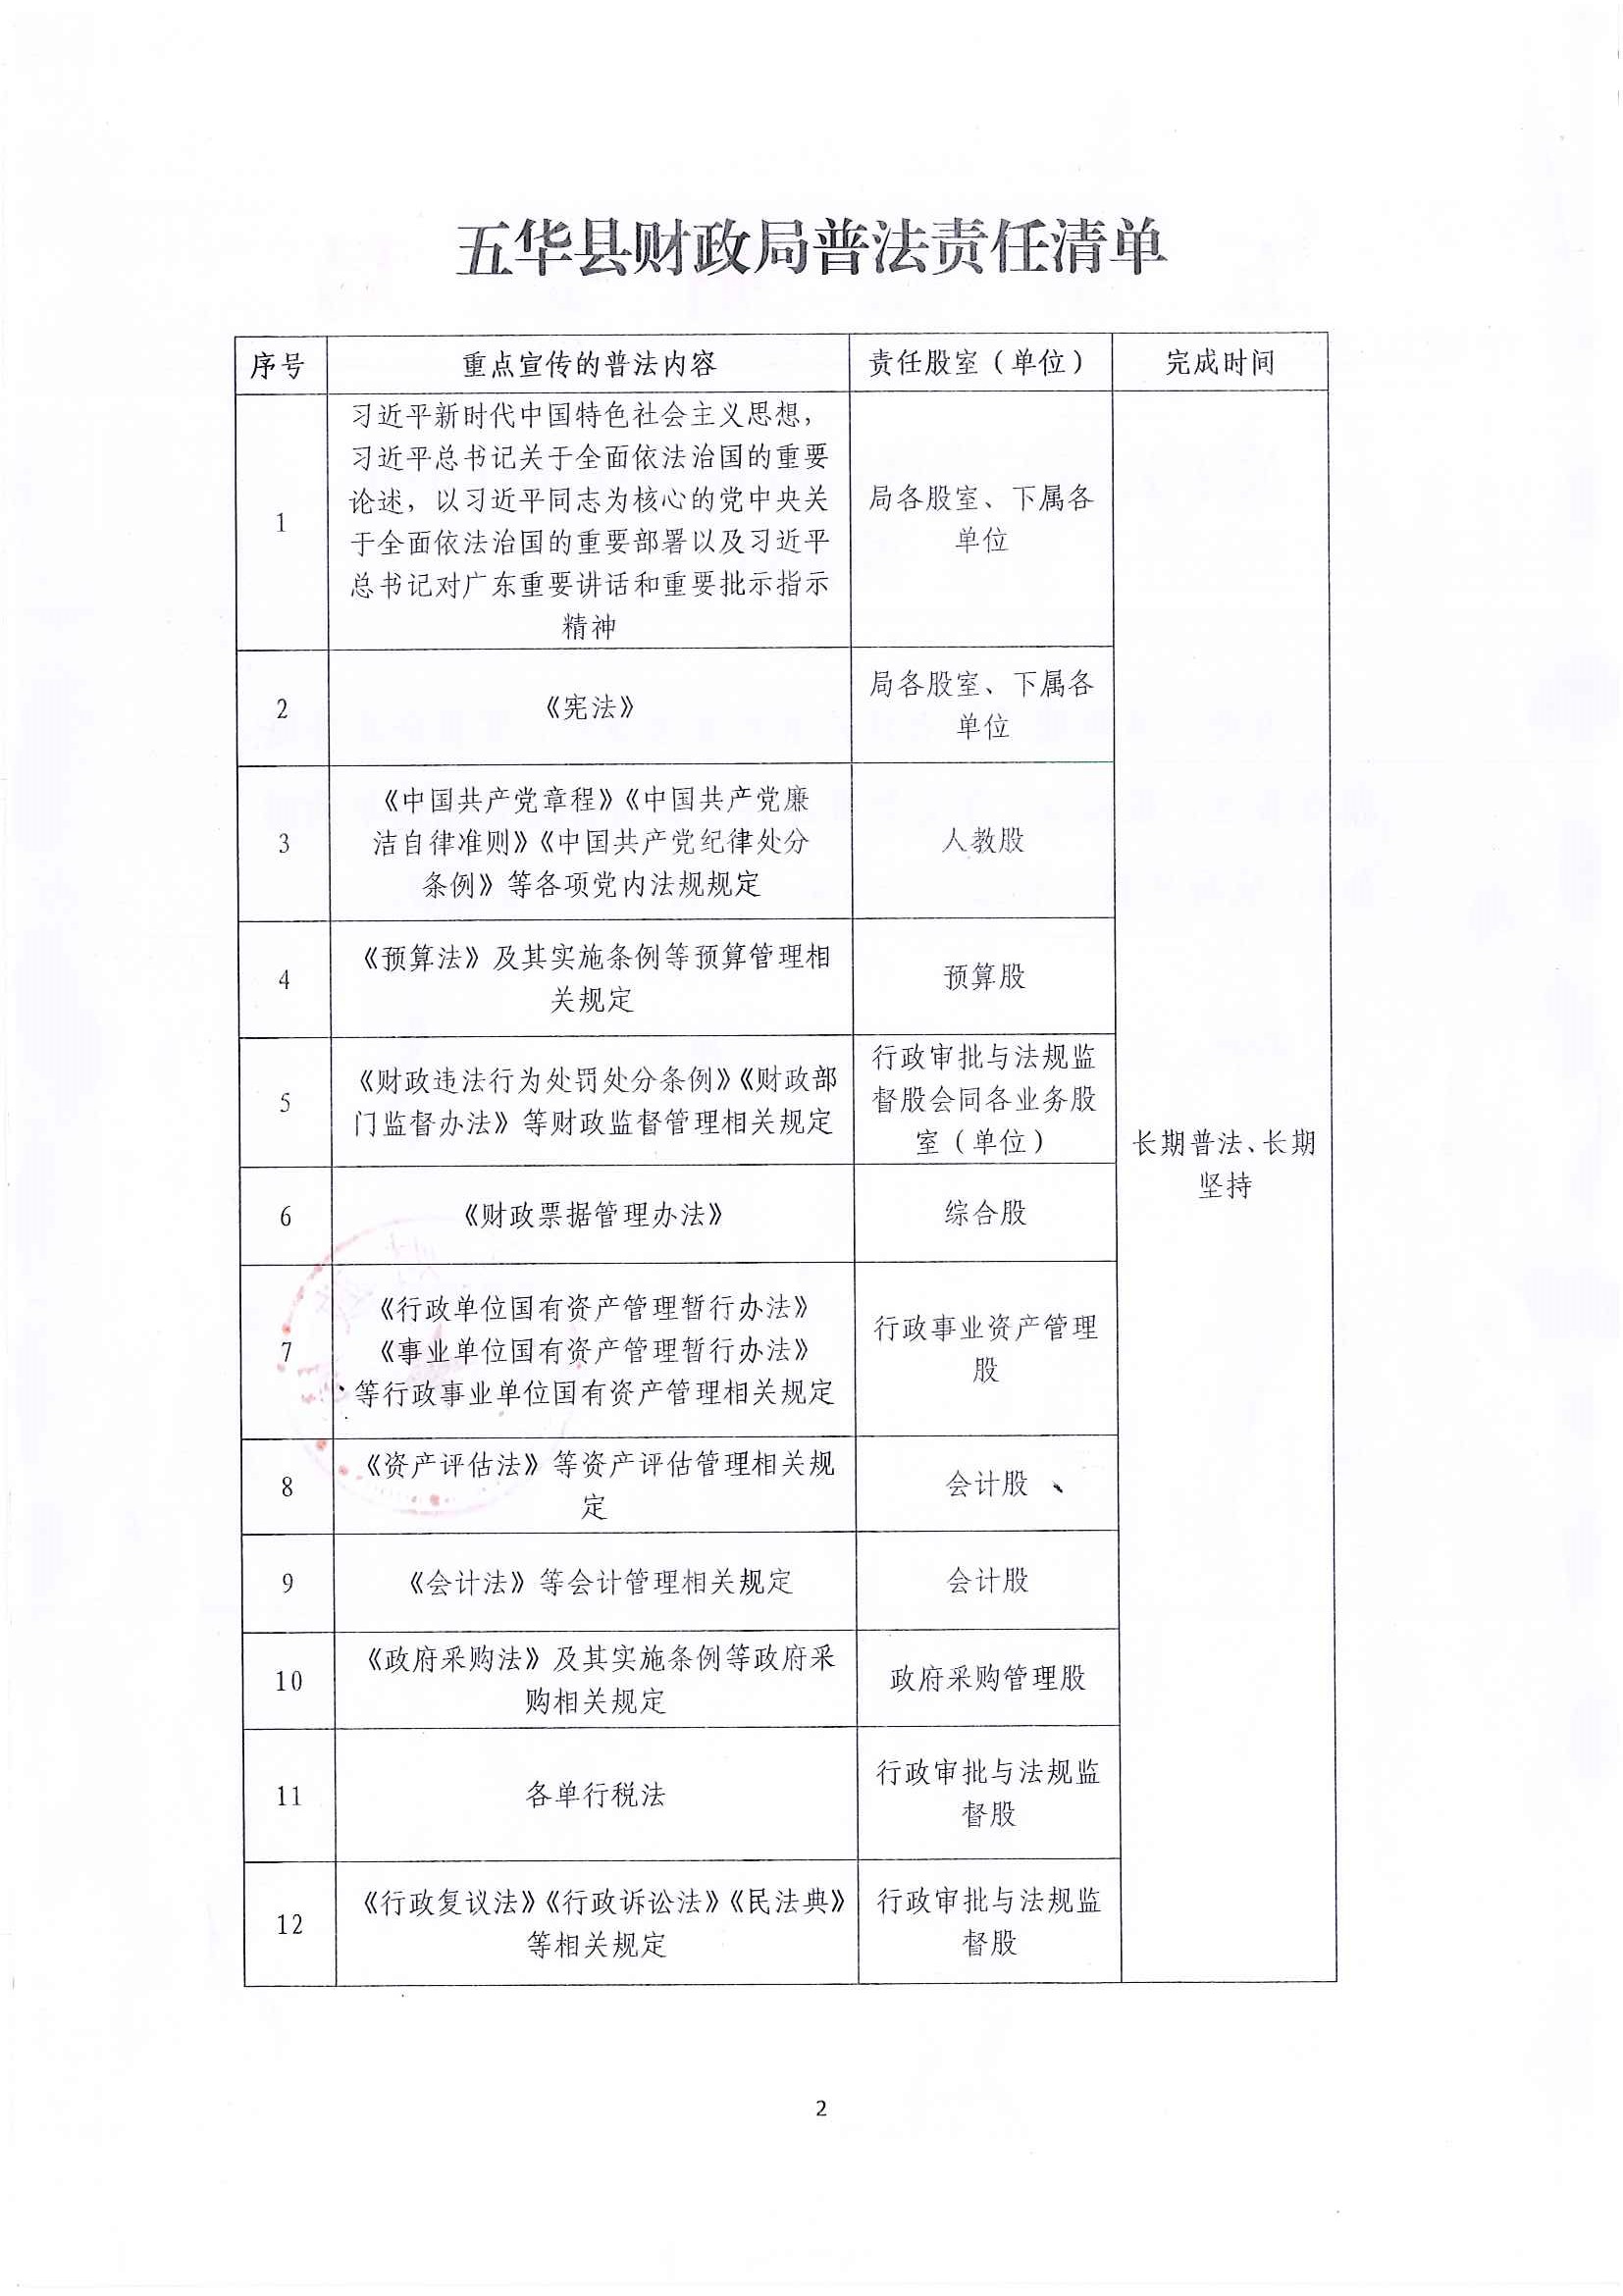 关于公布五华县财政局普法责任清单的公告_页面_2.jpg